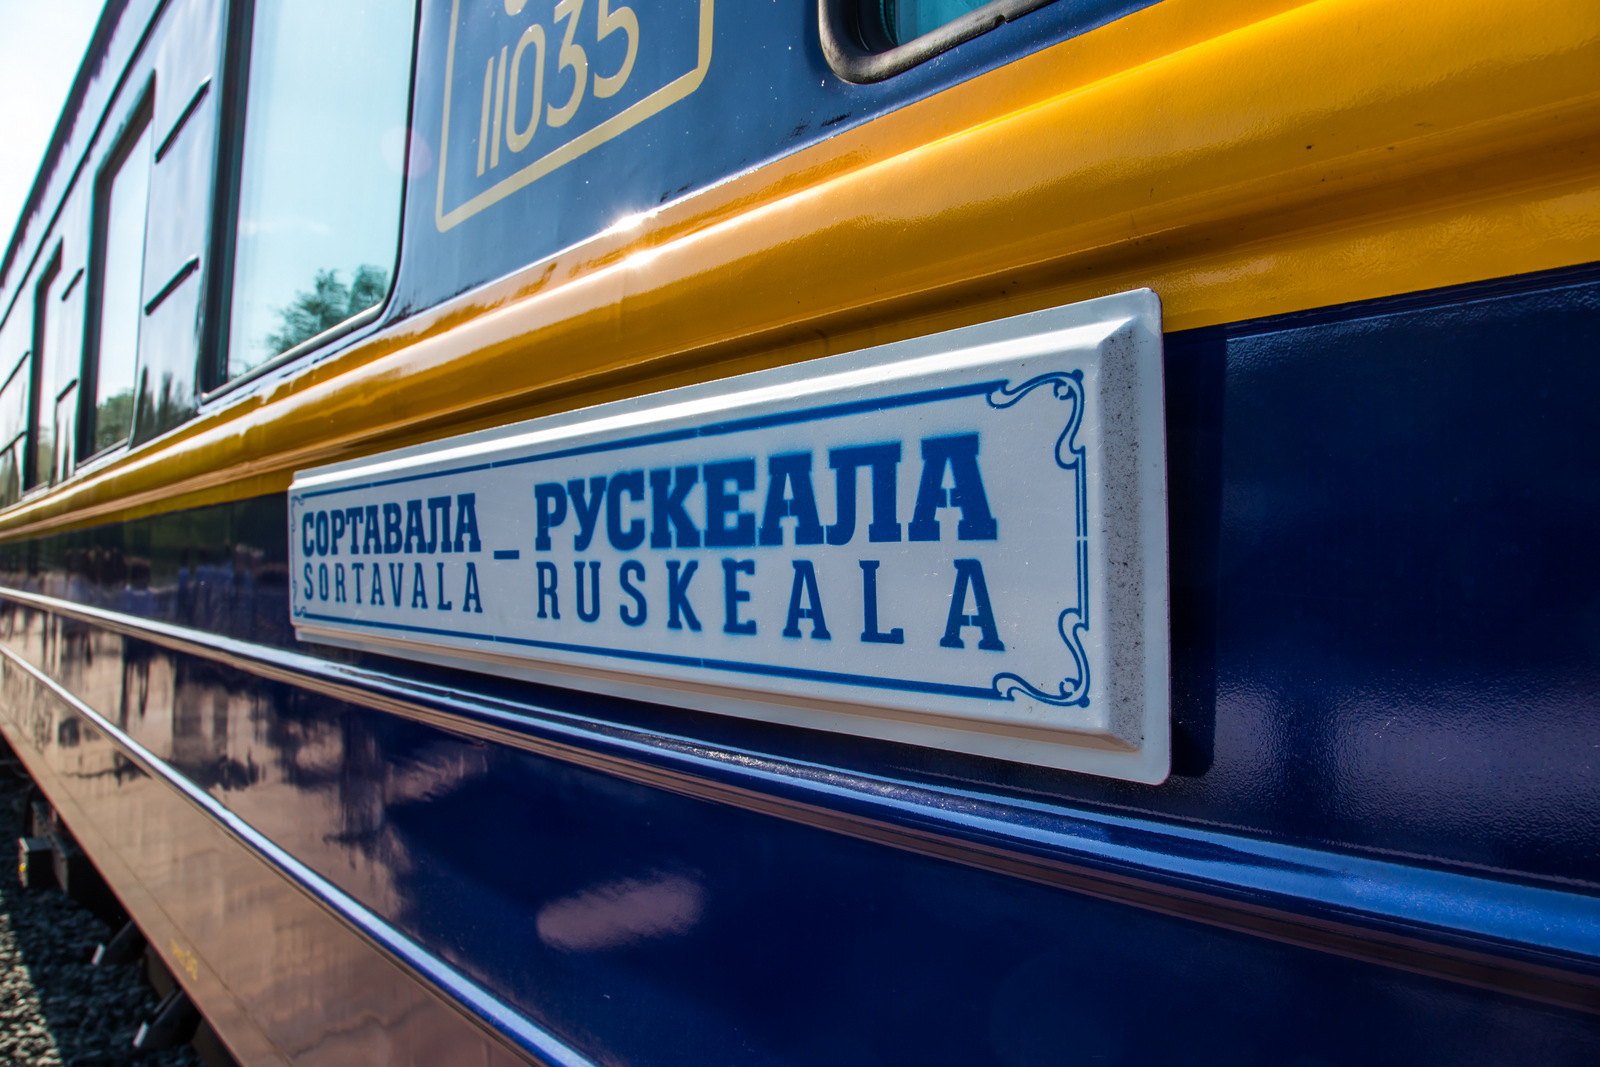 РЖД запустит поезд из Москвы в горный парк "Рускеала" в Карелии на праздники в феврале и марте